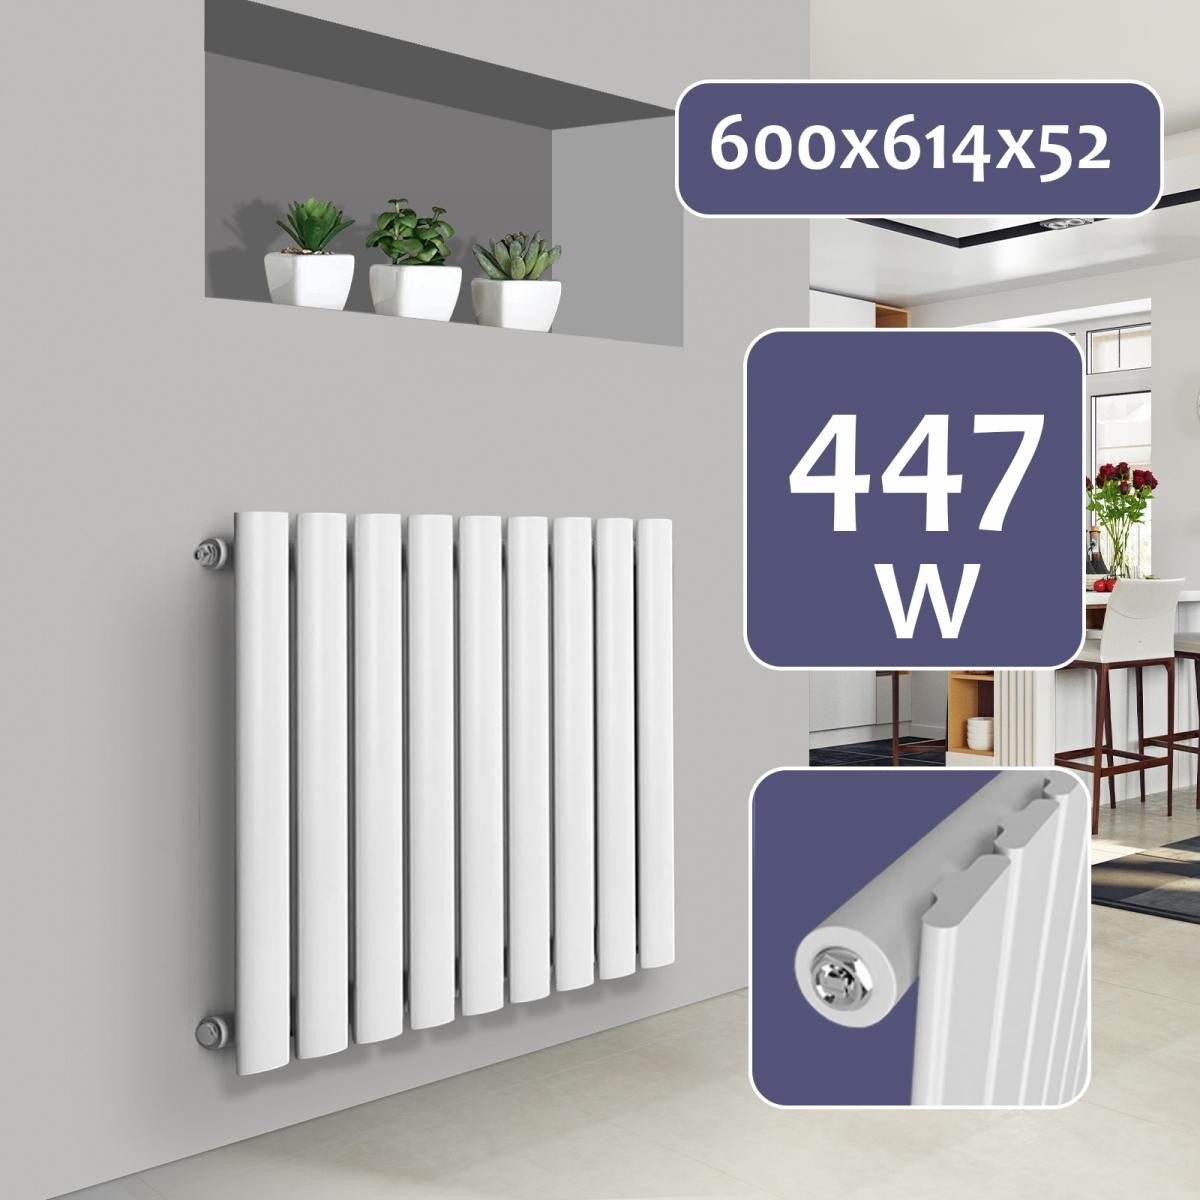 Billede af Aquamarine ® radiator - vandret, enkeltlag, 9 segmenter, 600x614x52 mm, centralvarme, hvid